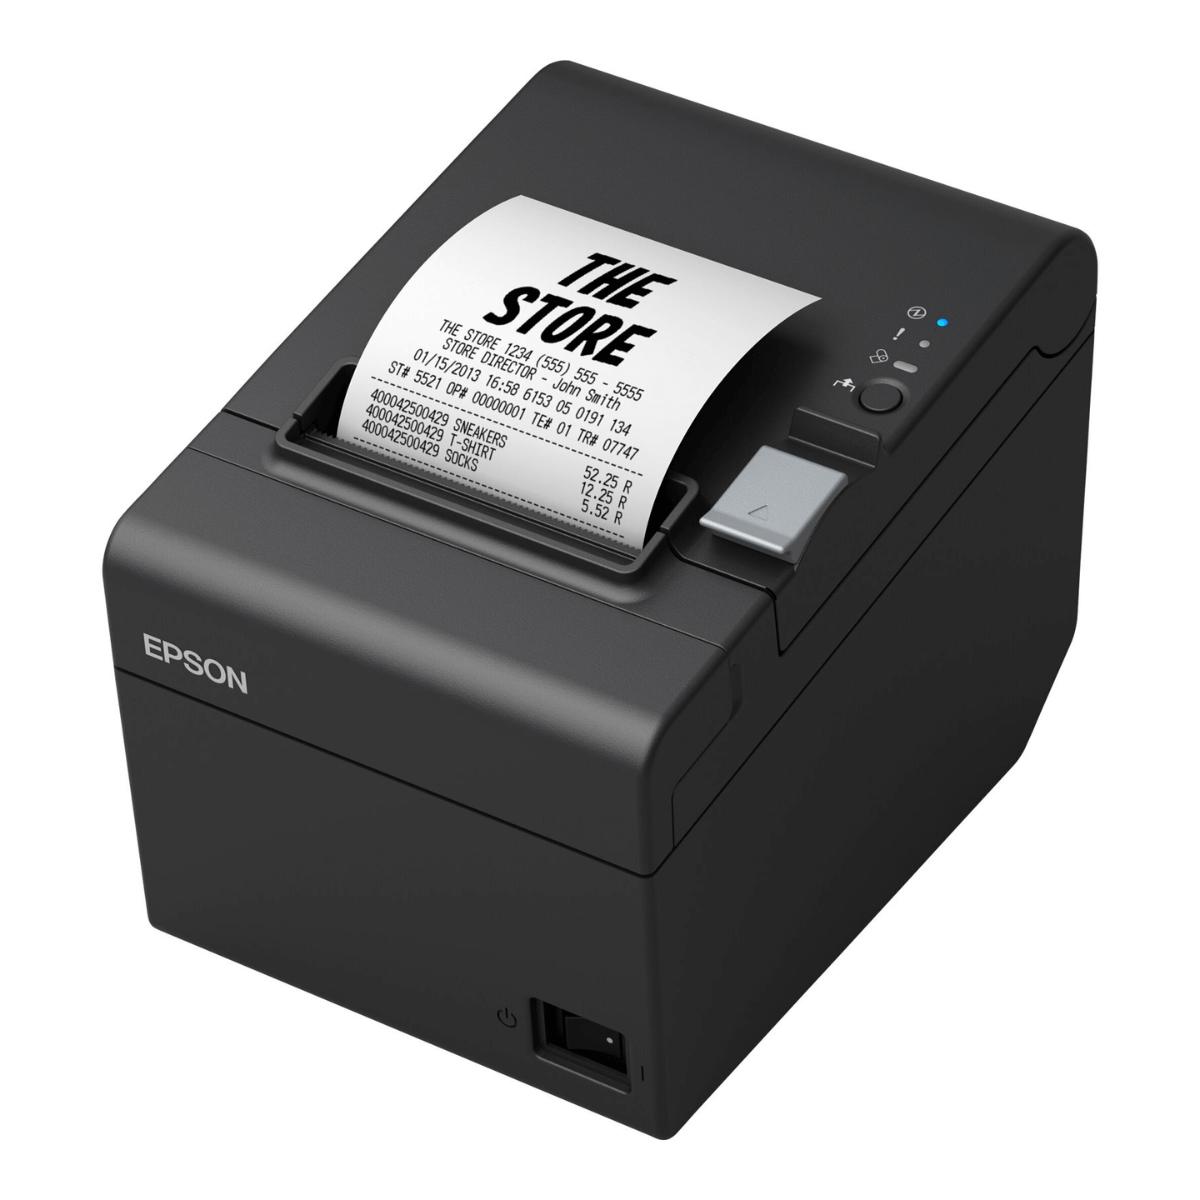 Epson TM T20lll - USB - DT - 203DPI - ETH  